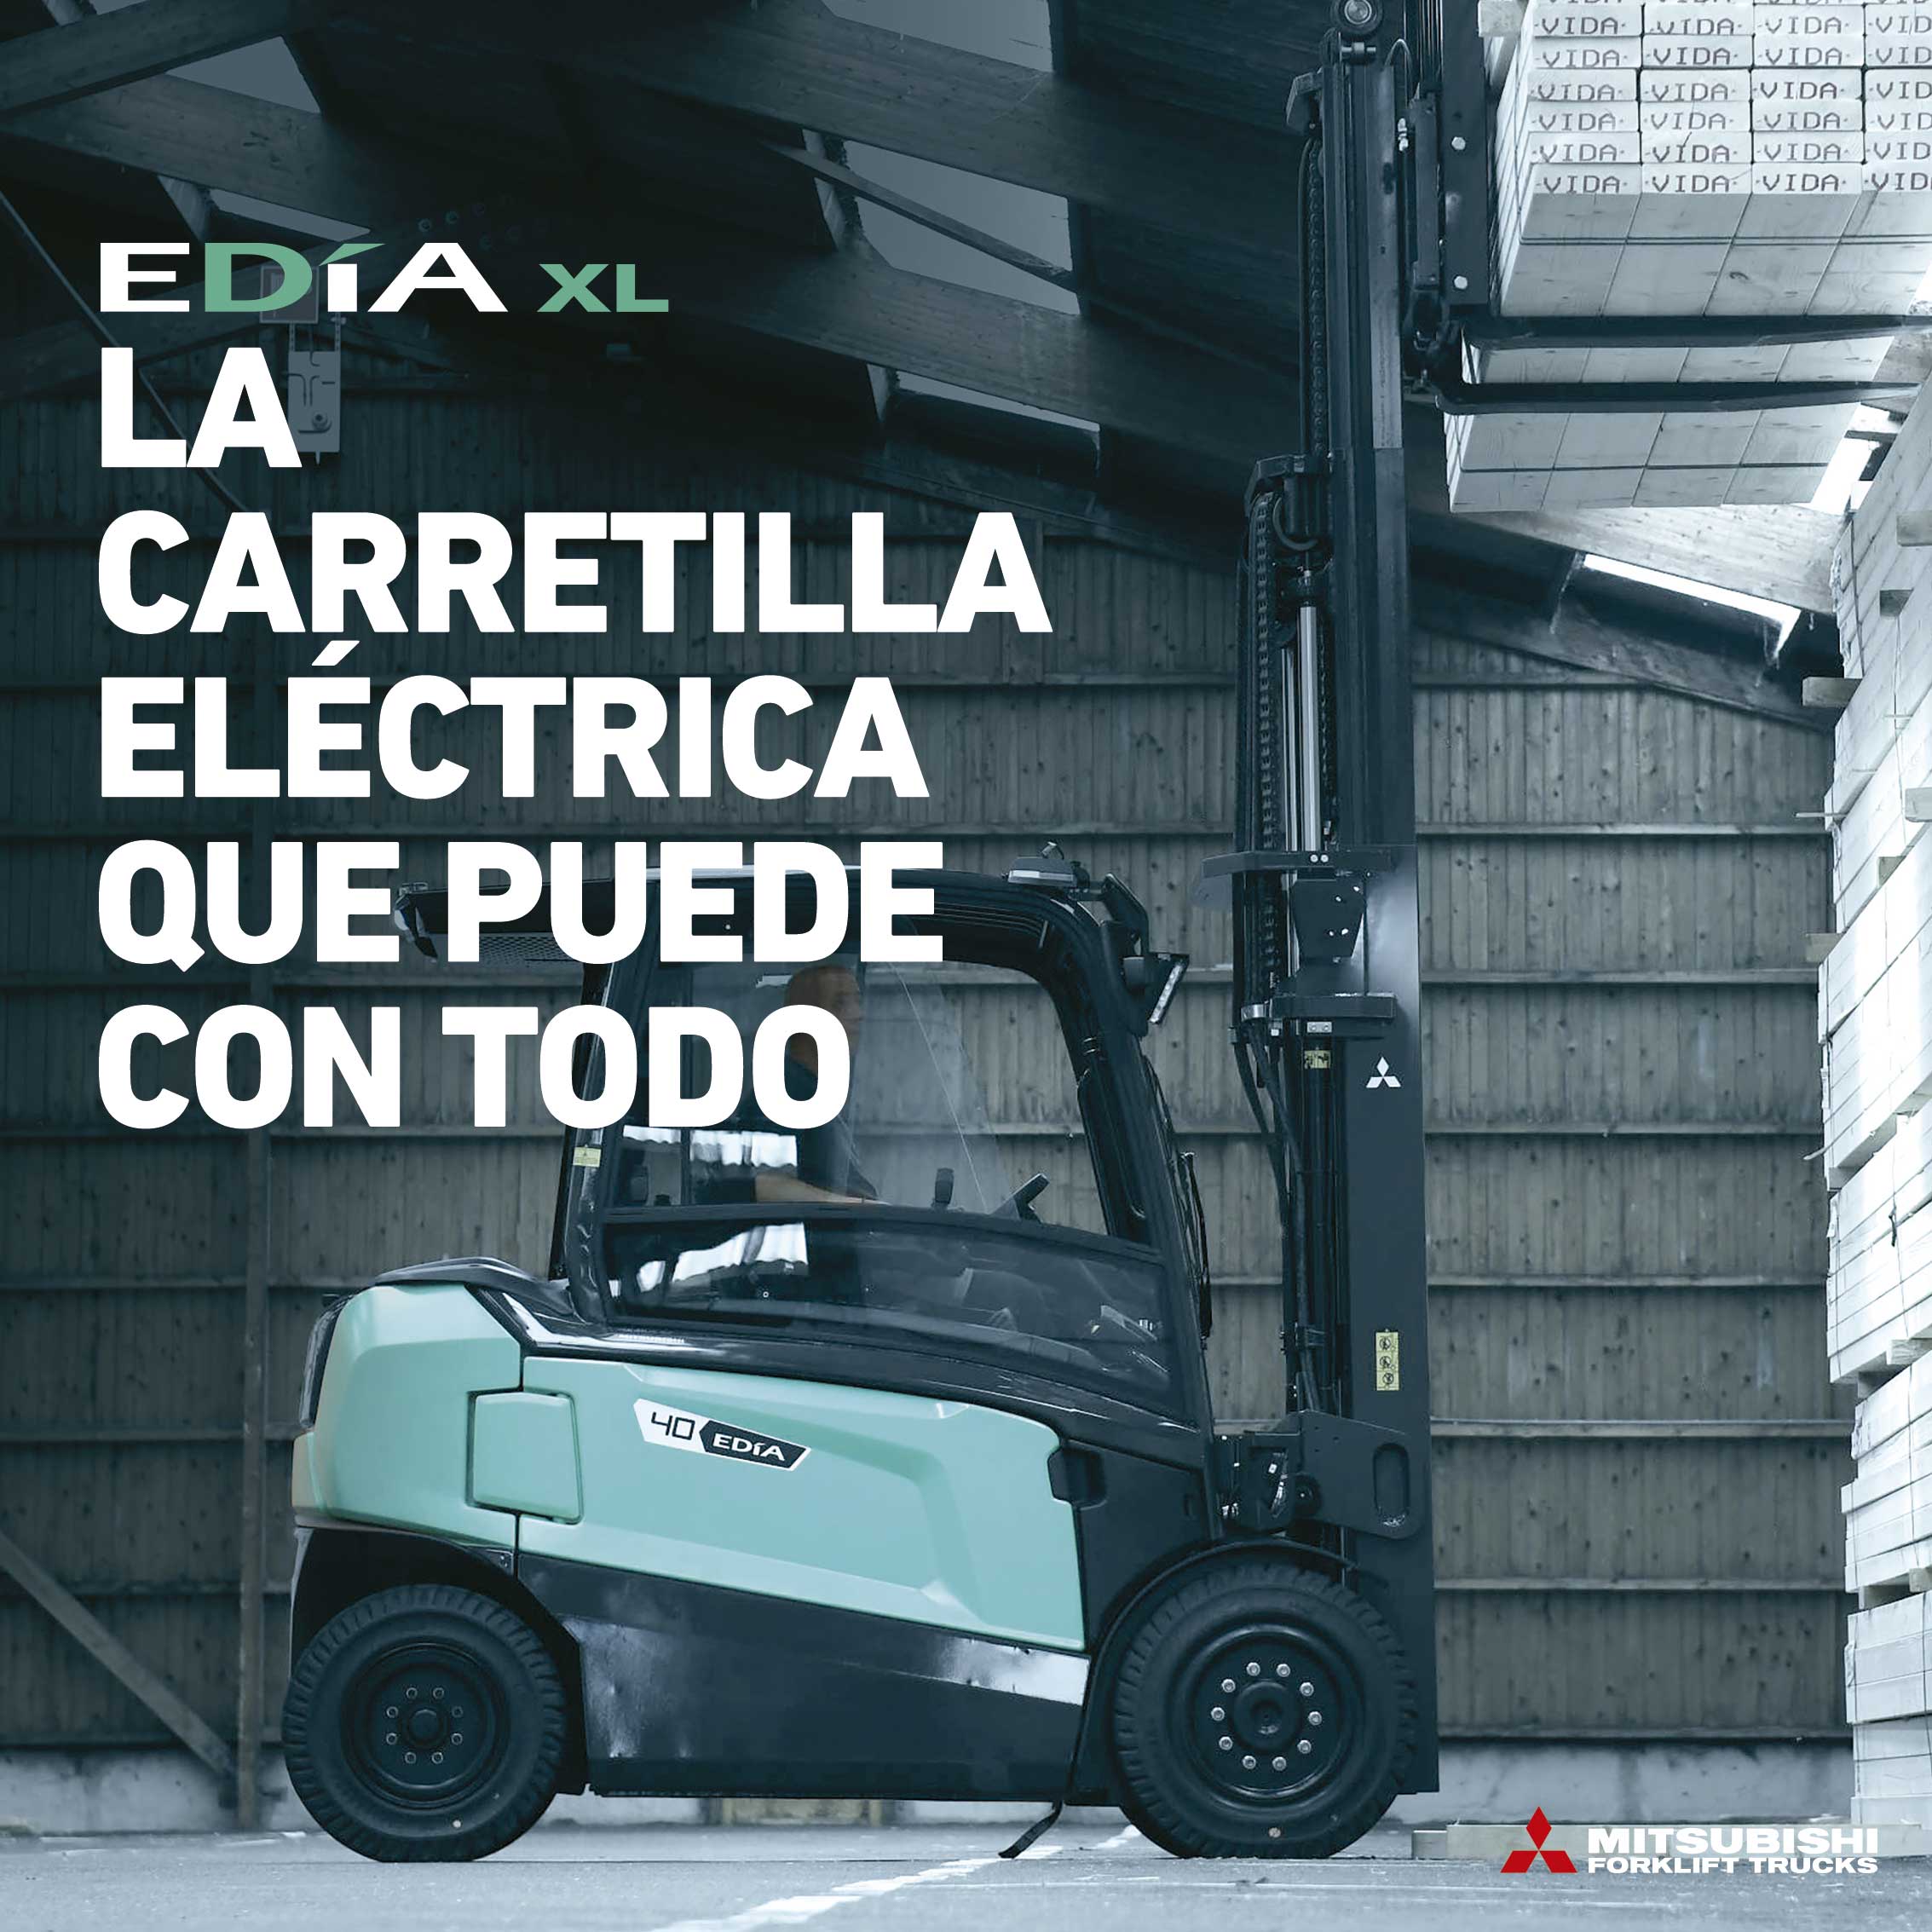 EDIA XL - la carretilla eléctrica que puede con todo